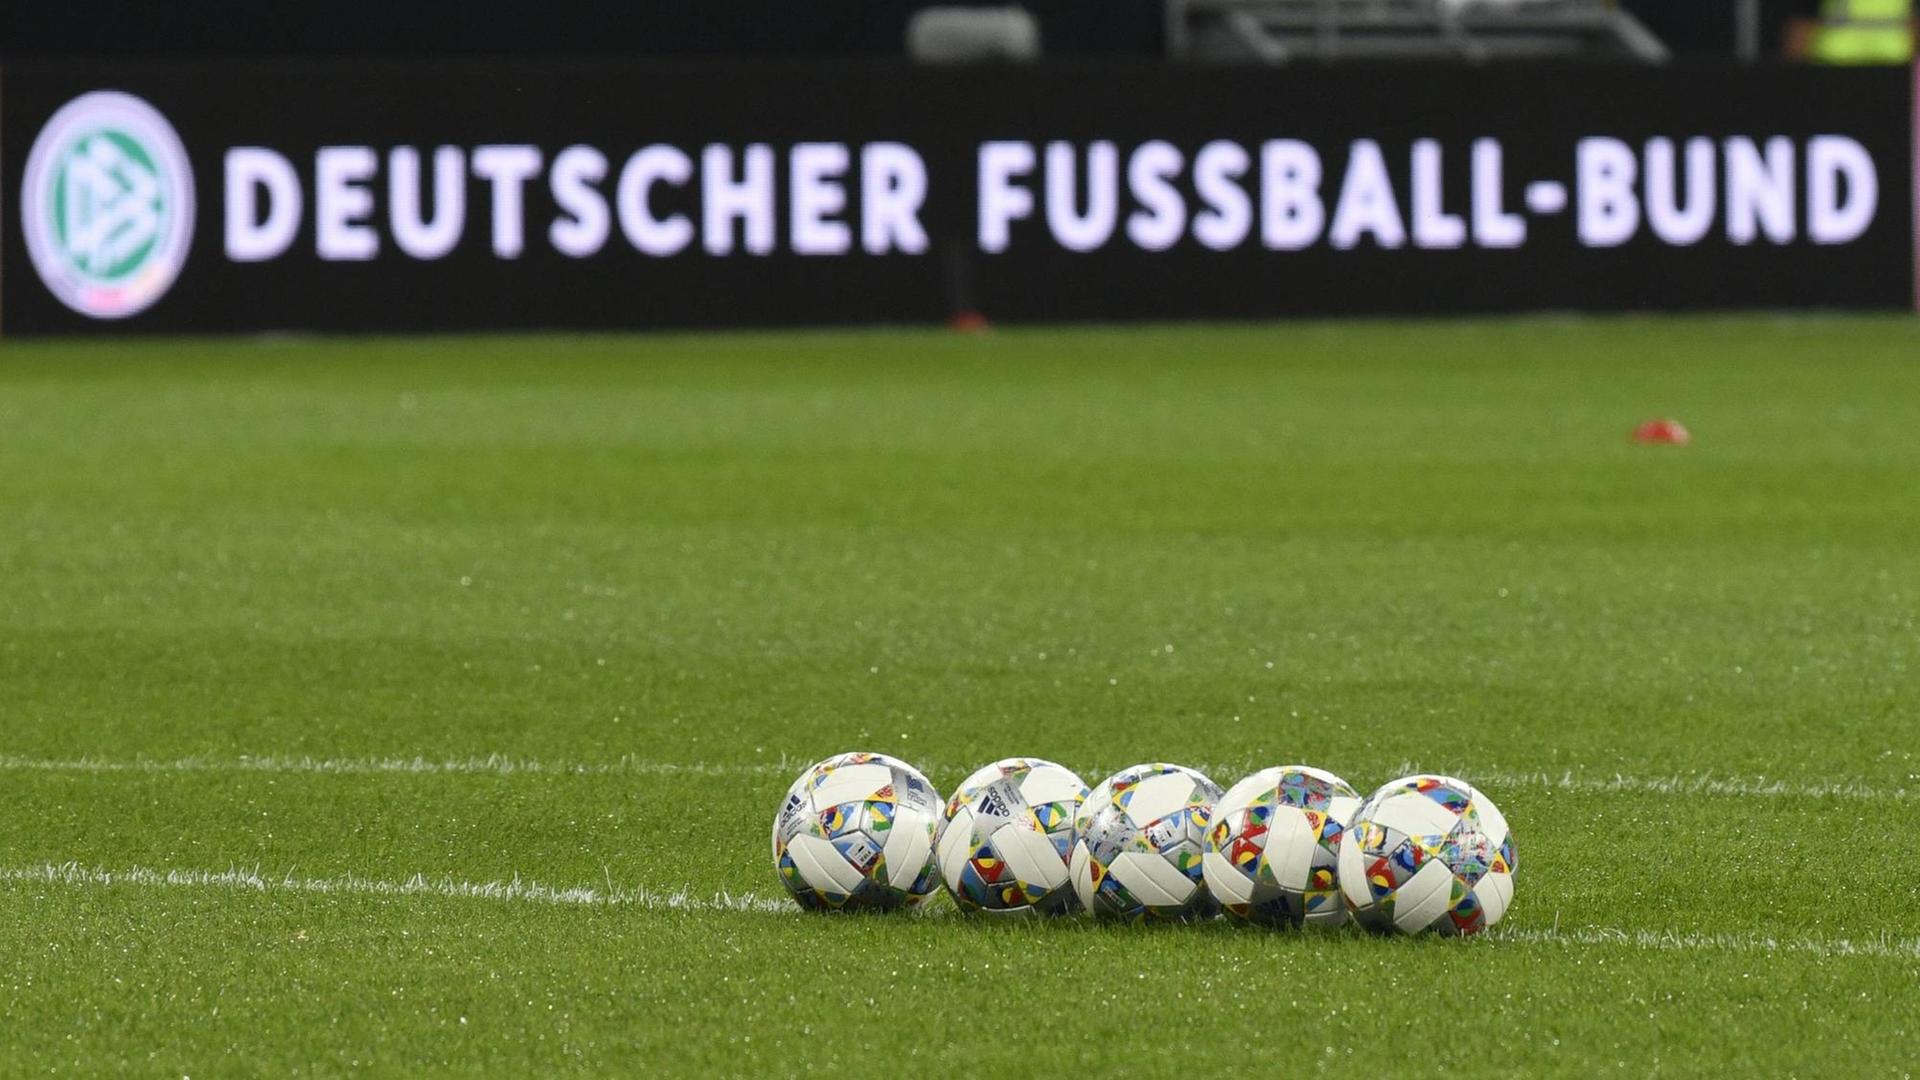 Mehrere Fussbälle liegen aufgereiht auf dem Rasen, im Hintergrund eine Bandenwerbung mit Logo und Schriftzug "Deutscher Fussball-Bund"